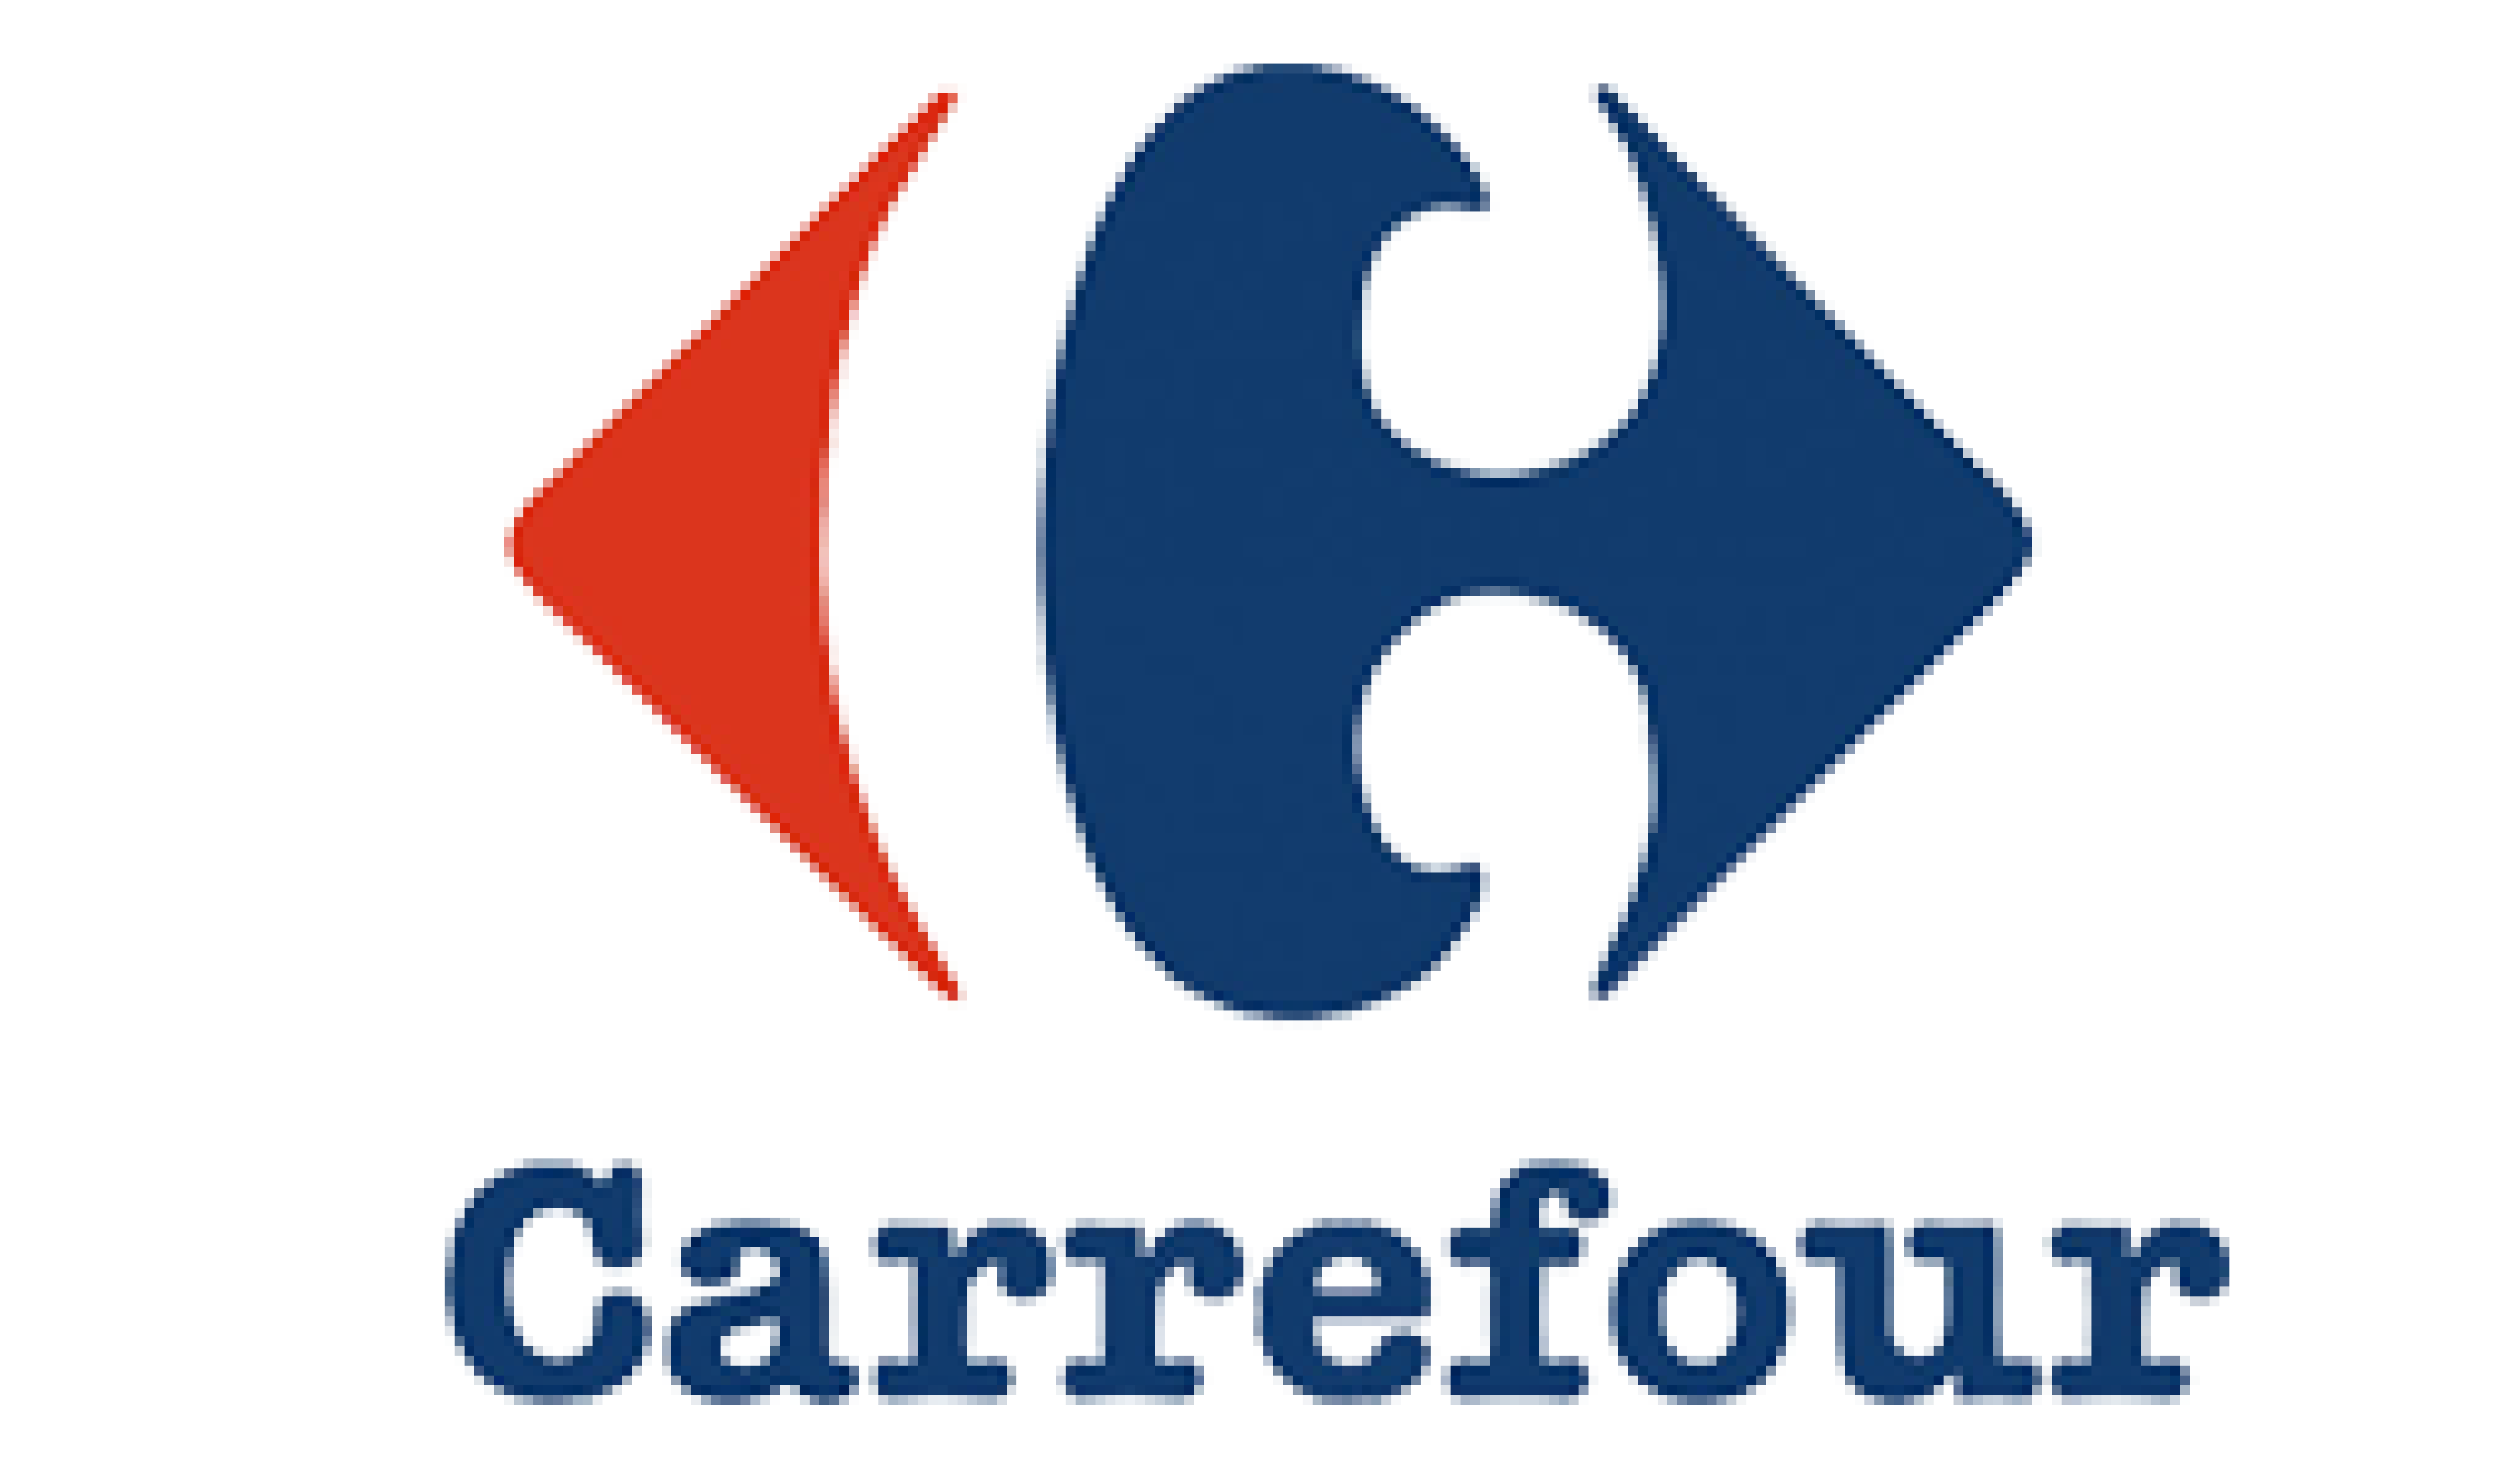 Carrfour